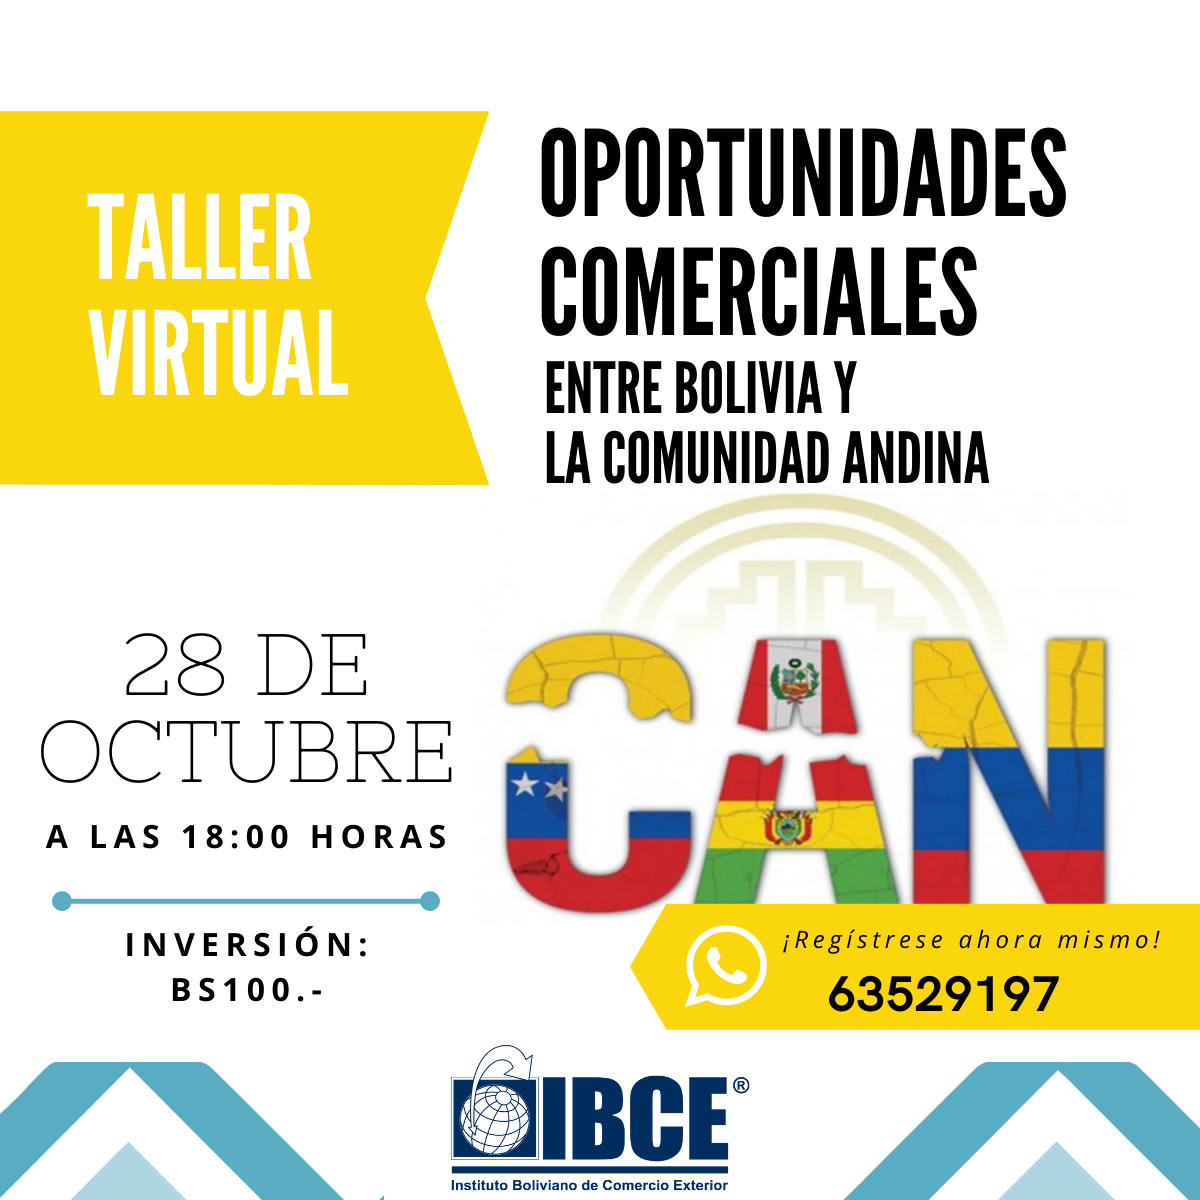 Taller Virtual: Oportunidades Comerciales entre Bolivia y la Comunidad Andina